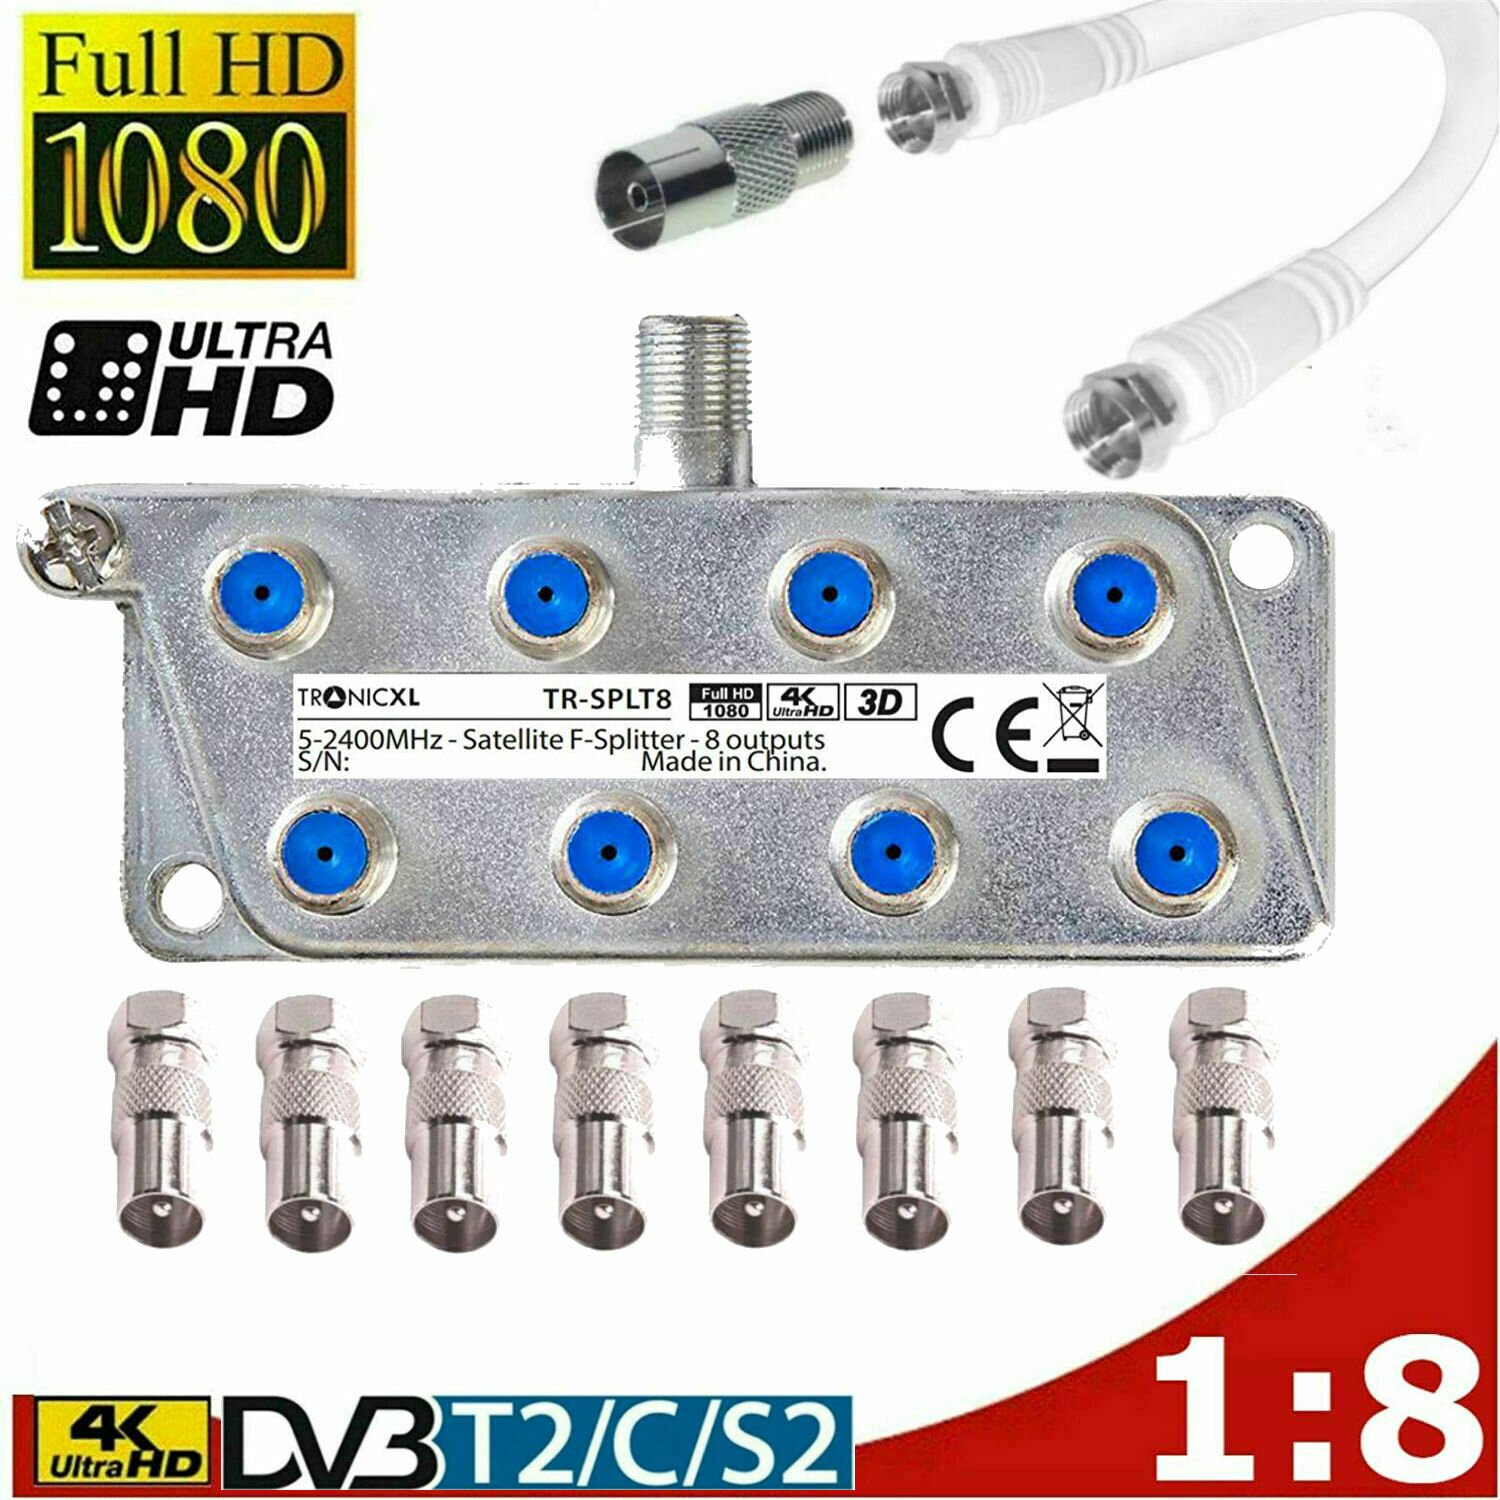 1 Stecker DVB-C TV Radio Antennen Adapter Verteiler Splitter IEC 2 Koax Buchse